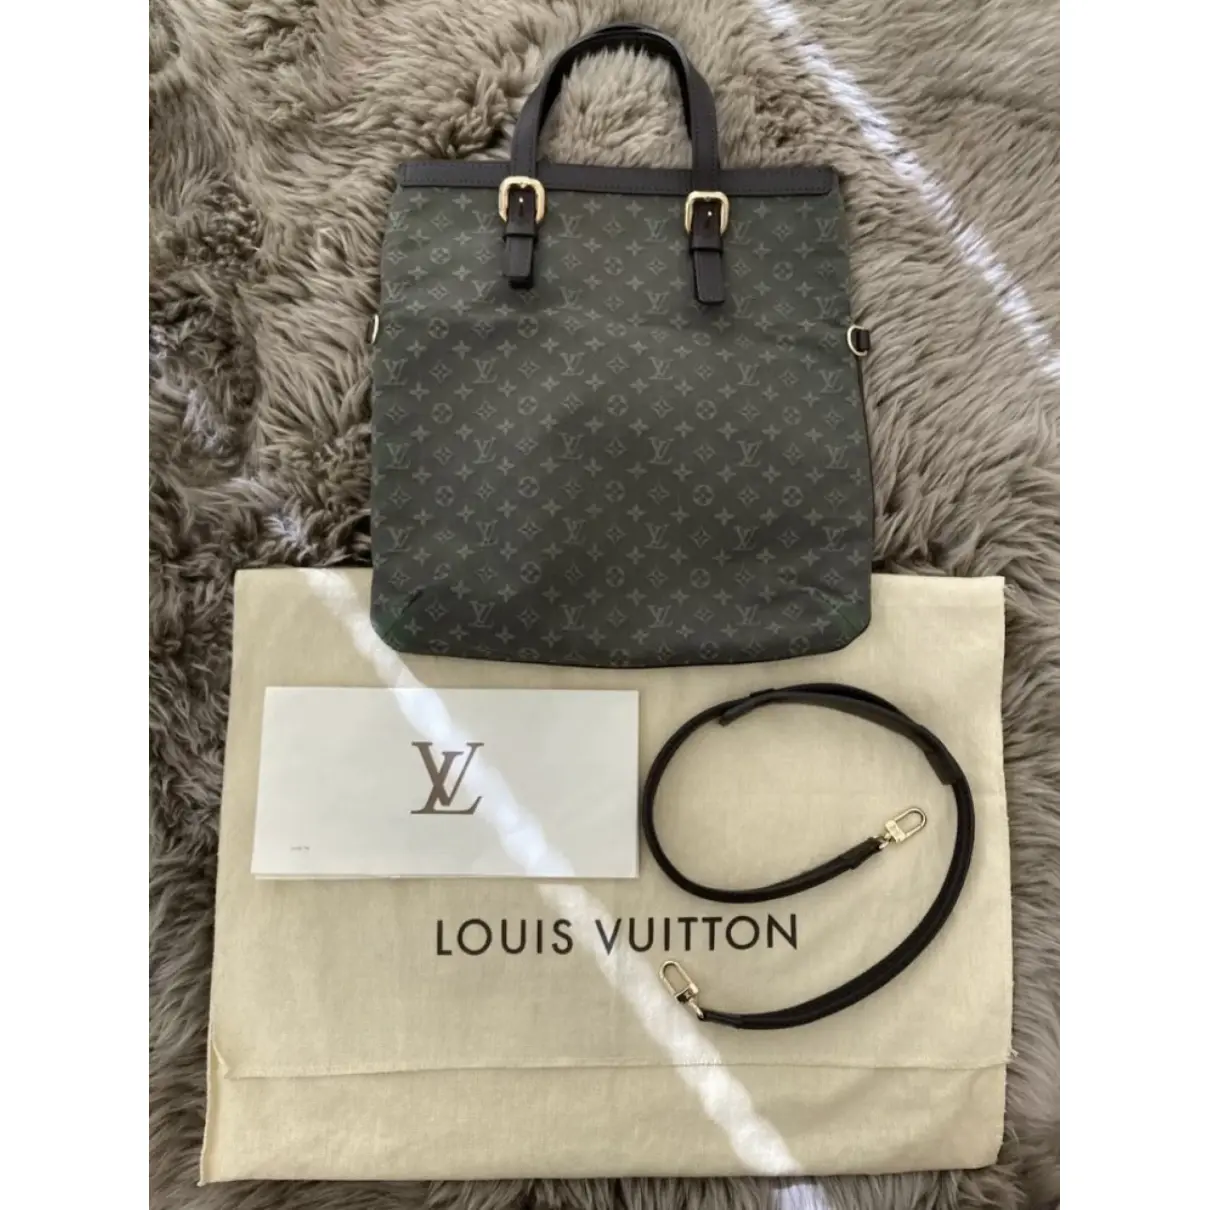 Françoise  cloth bag Louis Vuitton